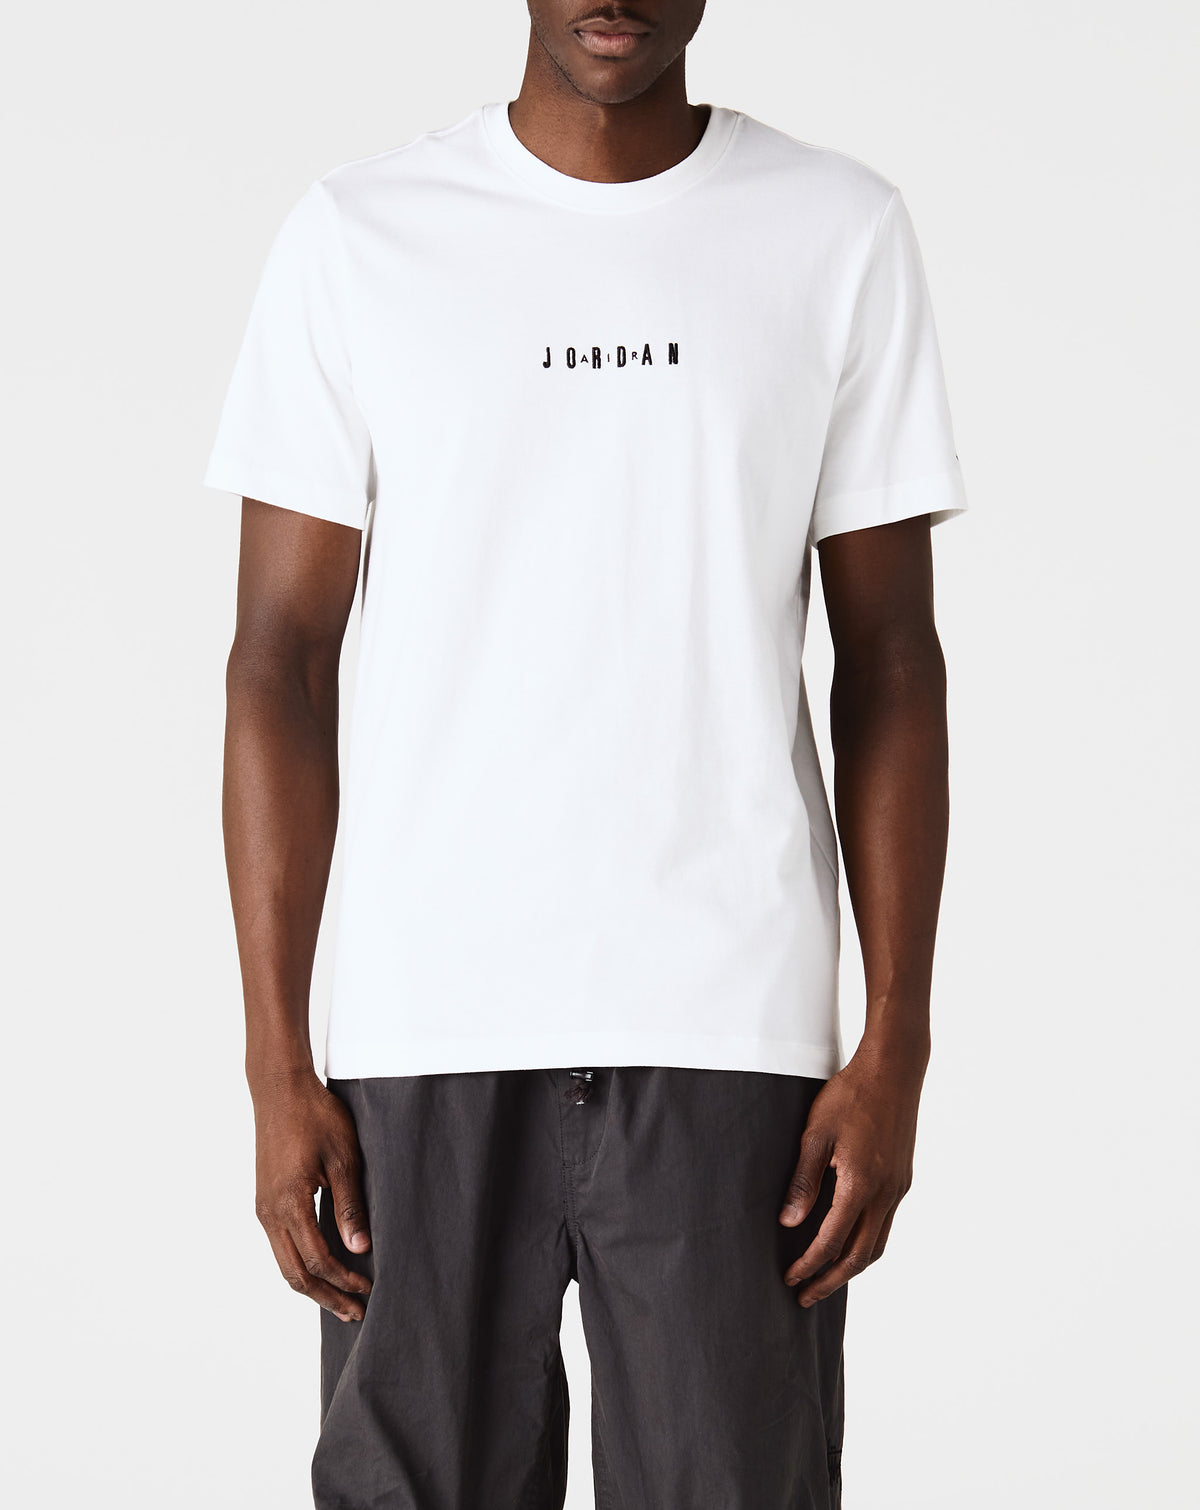 Air Jordan Jordan Air T-Shirt - Rule of Next Apparel